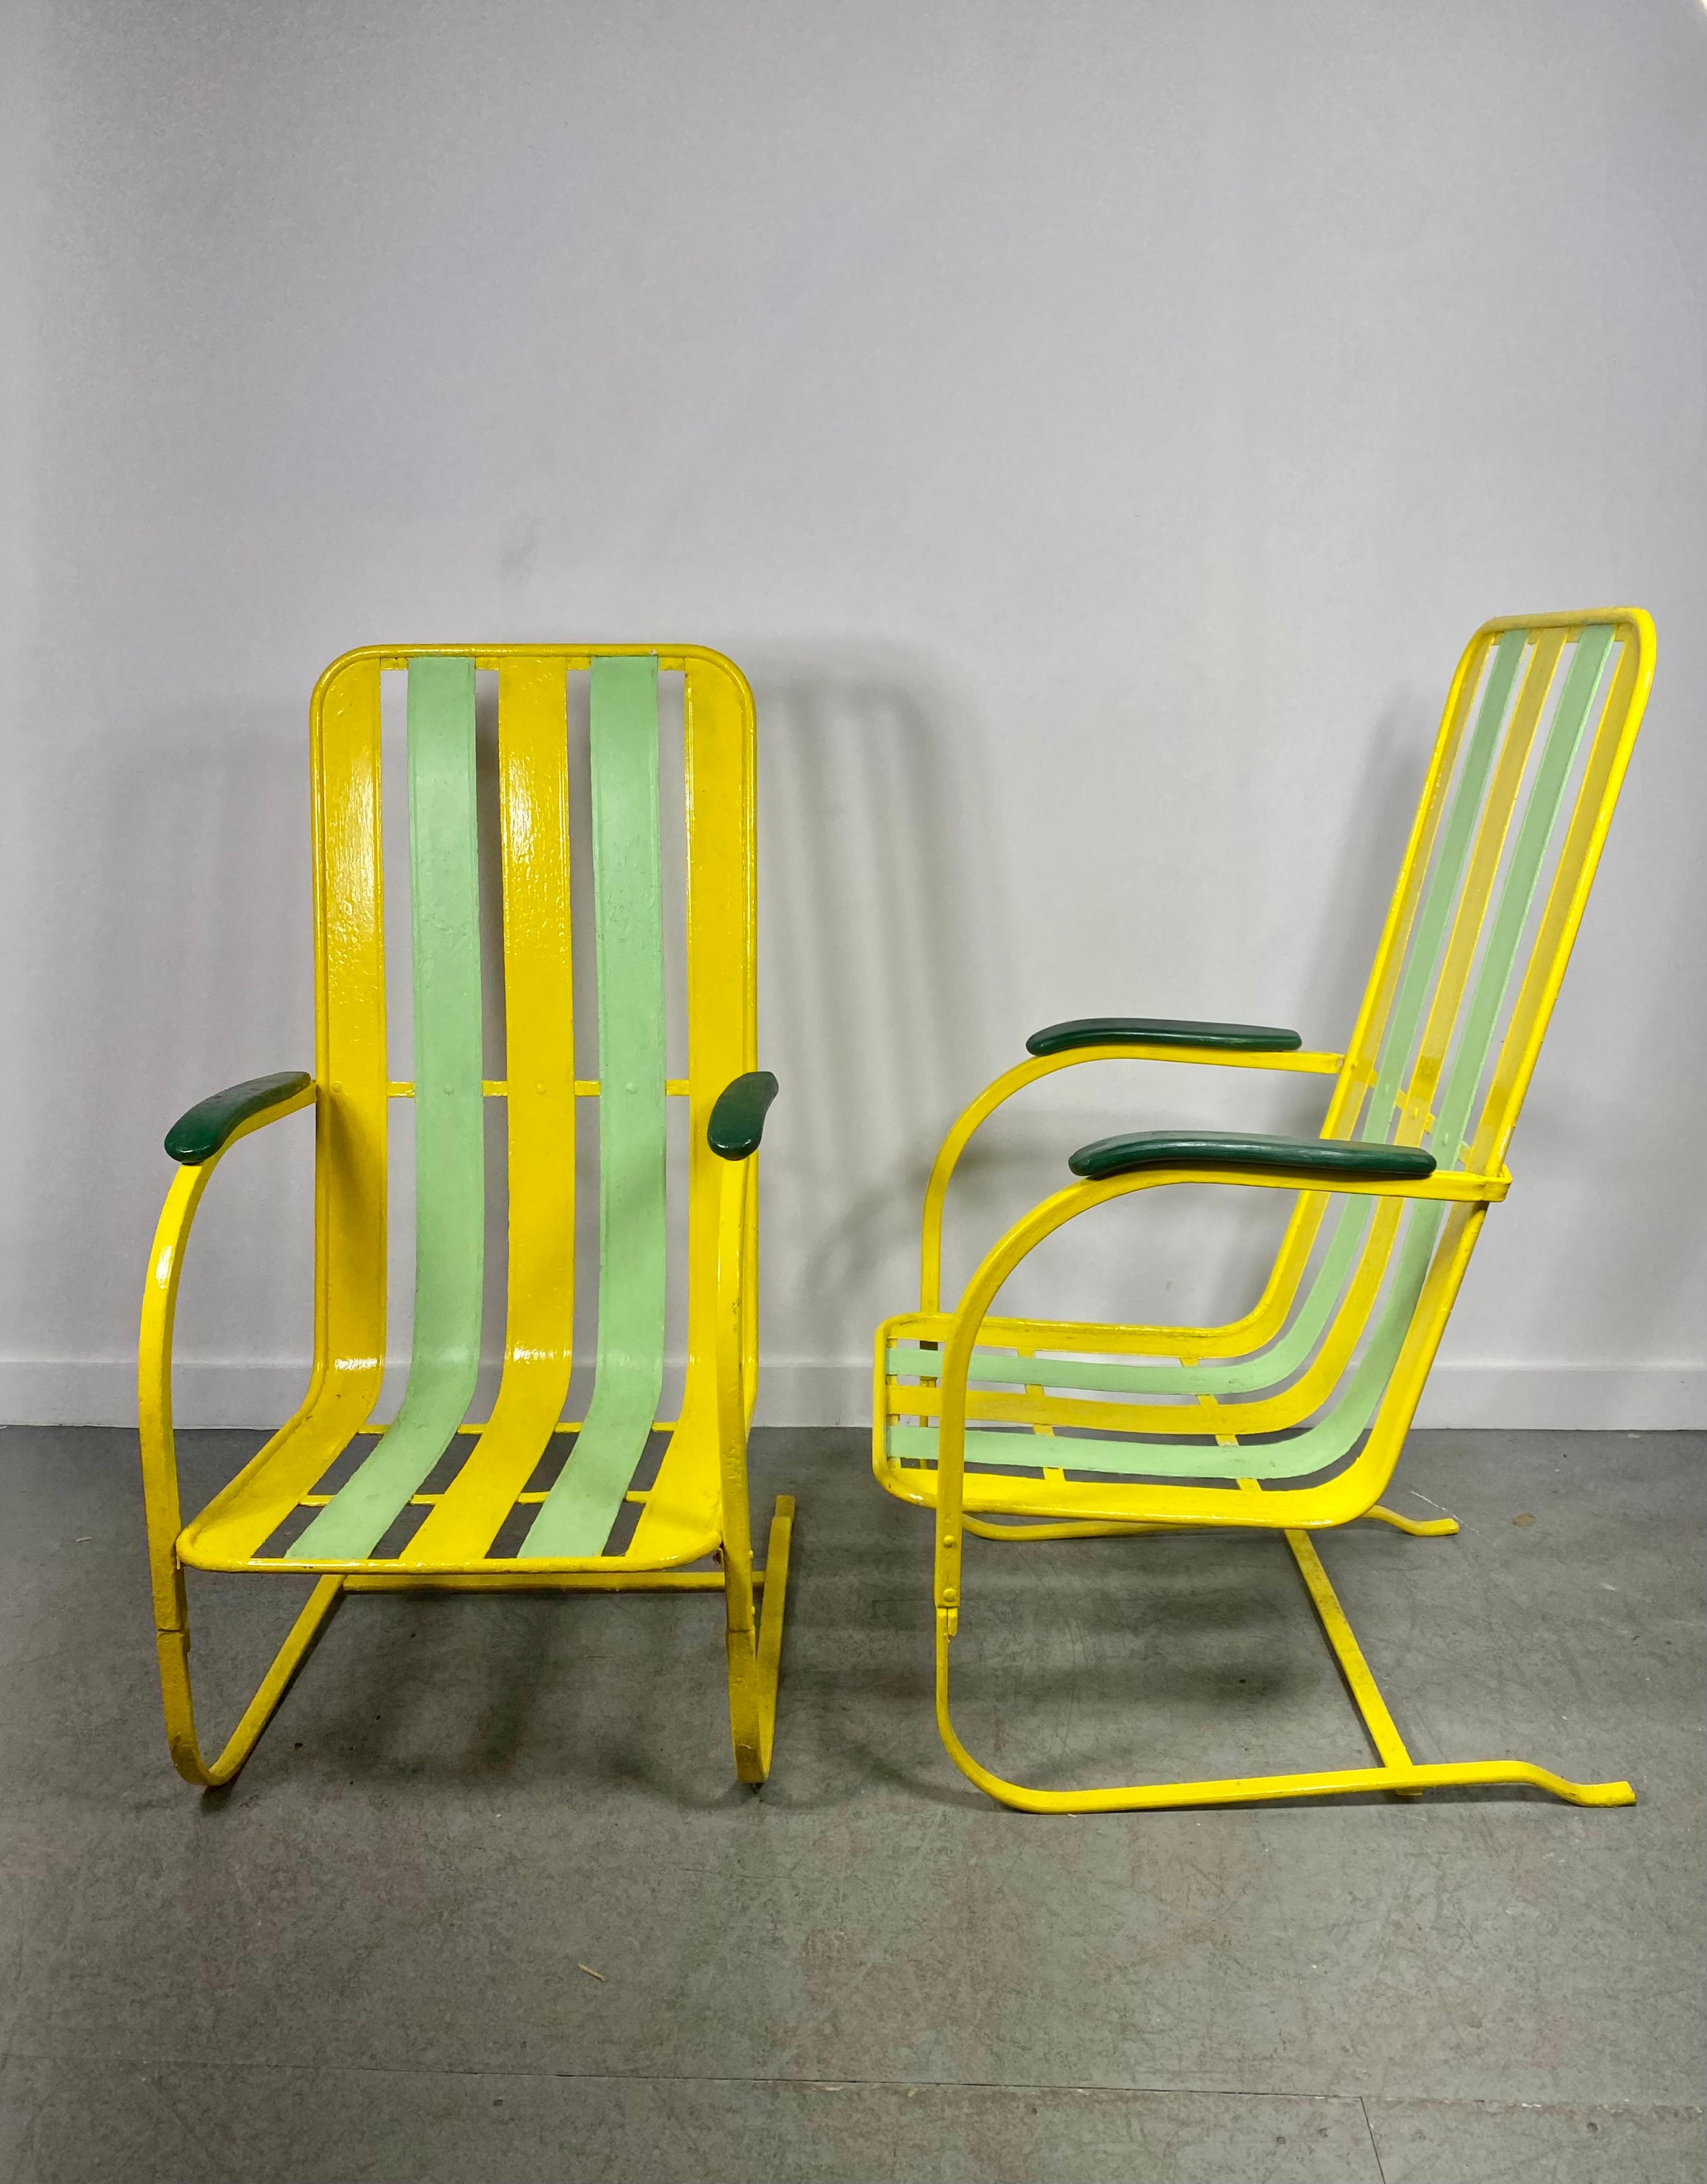 Klassisches Paar Art-Deco-Sessel mit hoher Rückenlehne aus Federstahl, die Lloyd Loom zugeschrieben werden, entworfen von Kem Weber. Super stylisch. Erstaunliches Design,, Neu lackiert irgendwann in Spaß, skurrilen Farben..Extrem komfortabel,, Hand